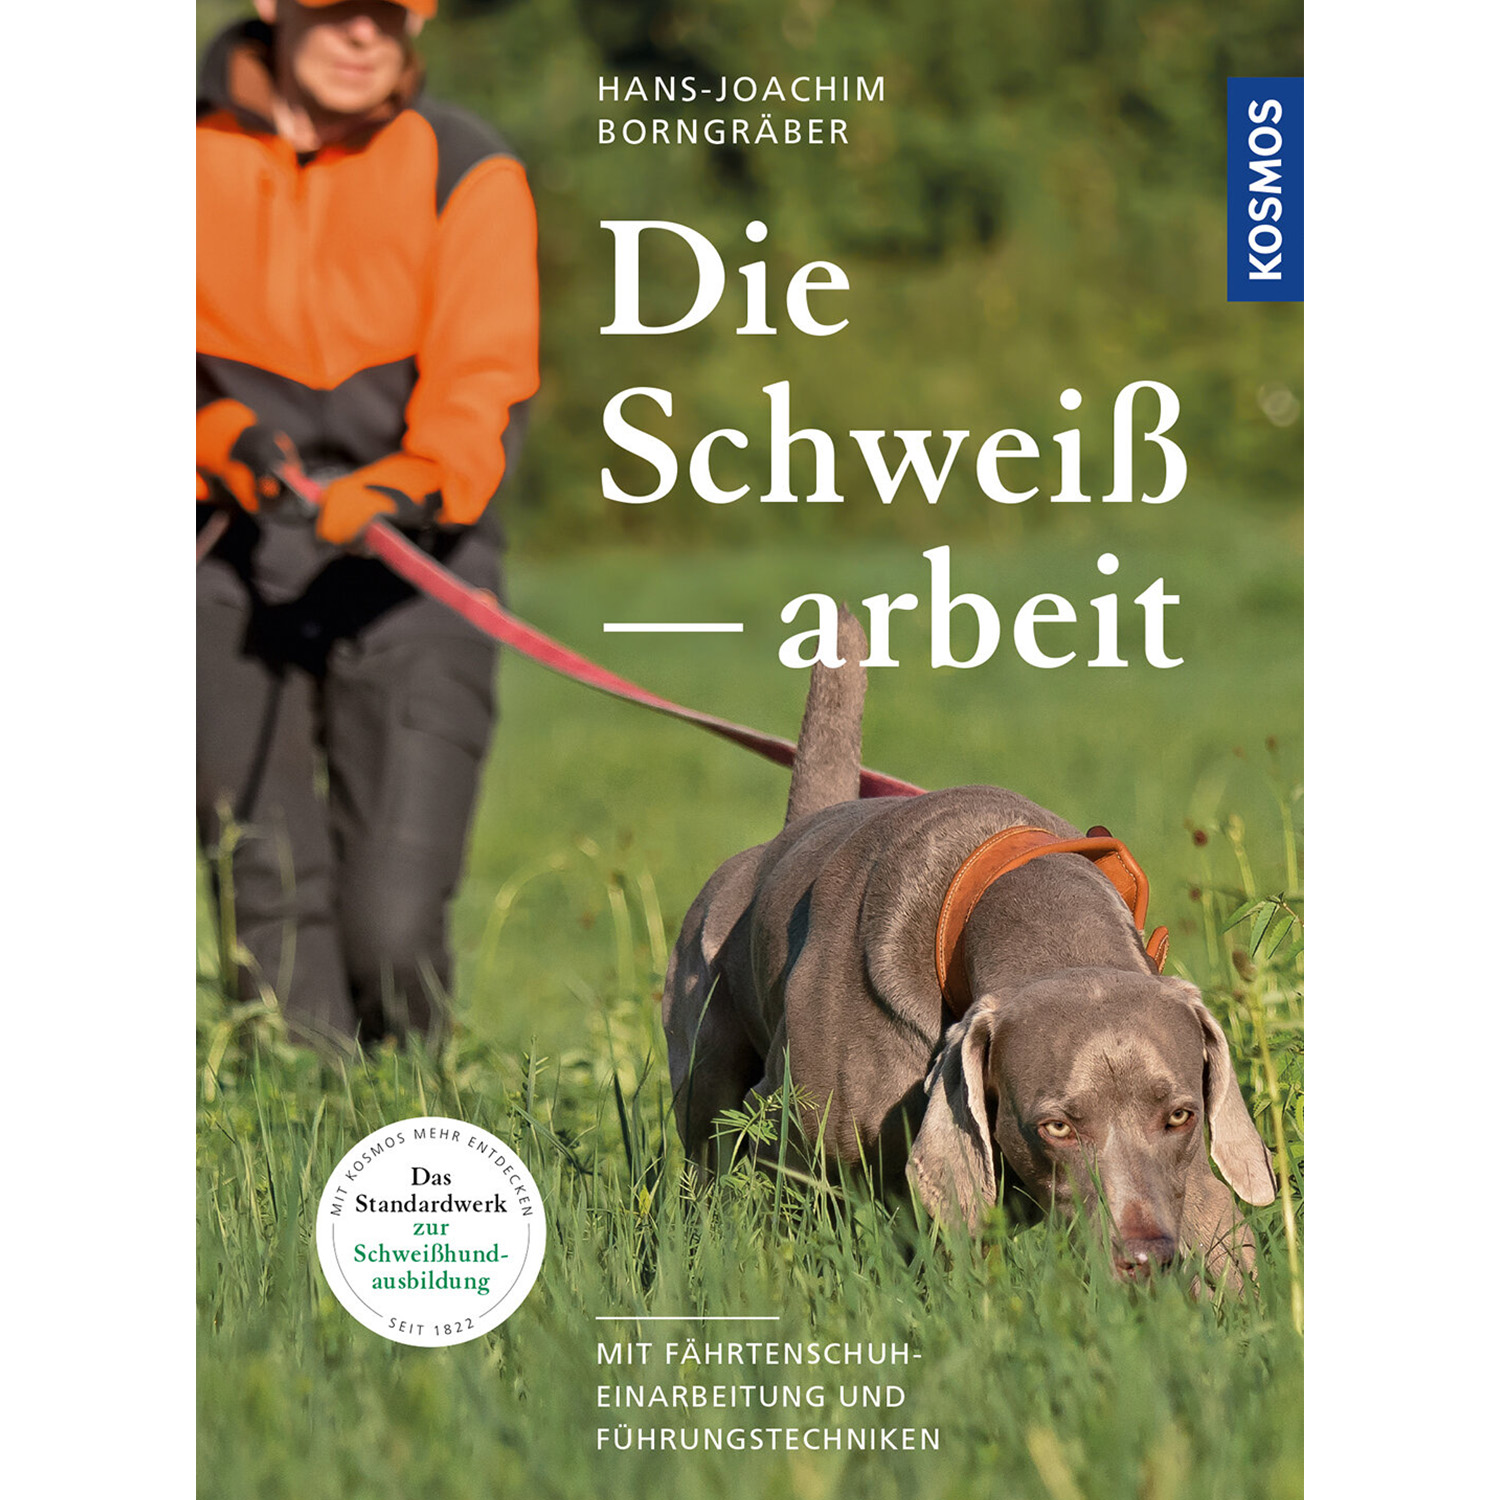 Die Schweißarbeit - Buch - Hans-Joachim Borngräber - Neu im Shop